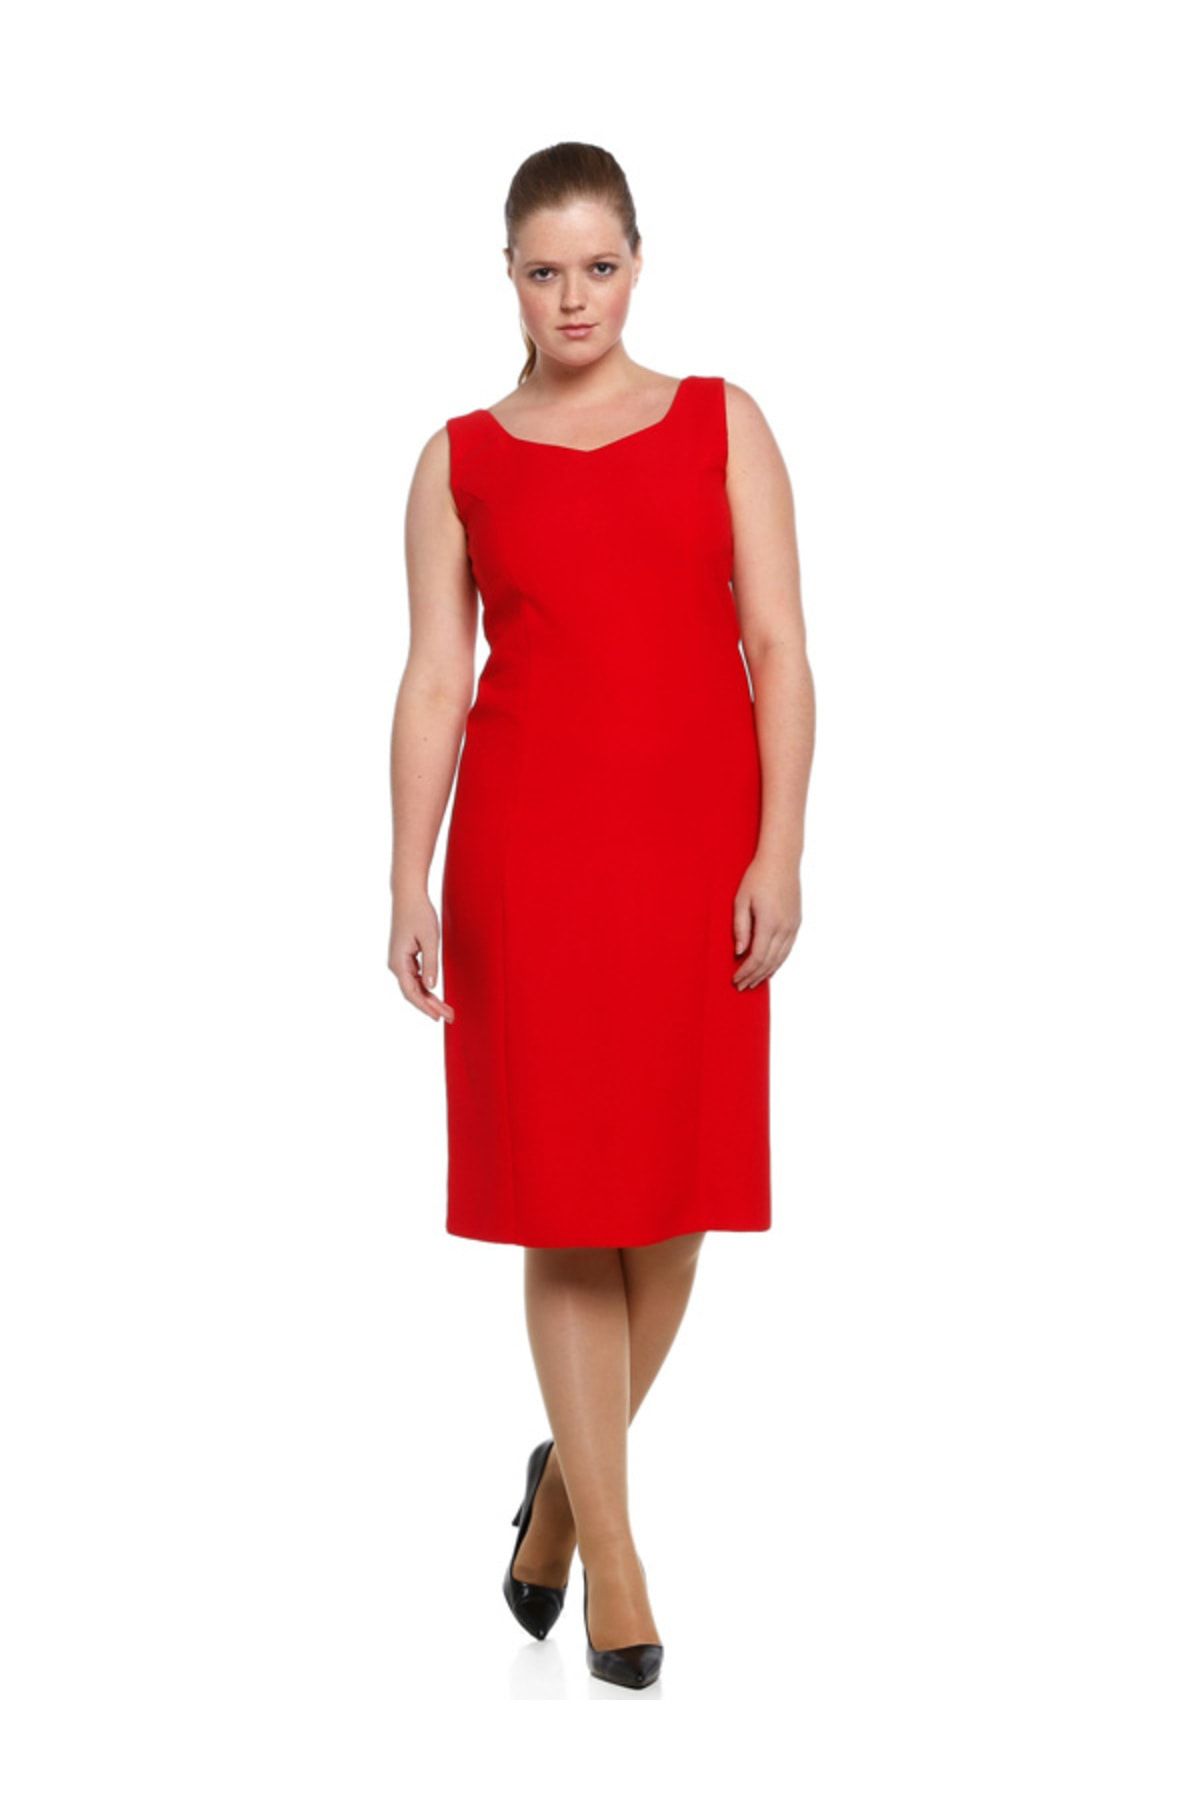 Nidya Moda Kadın Kırmızı Dalga Yaka Abiye Elbise 4065KK